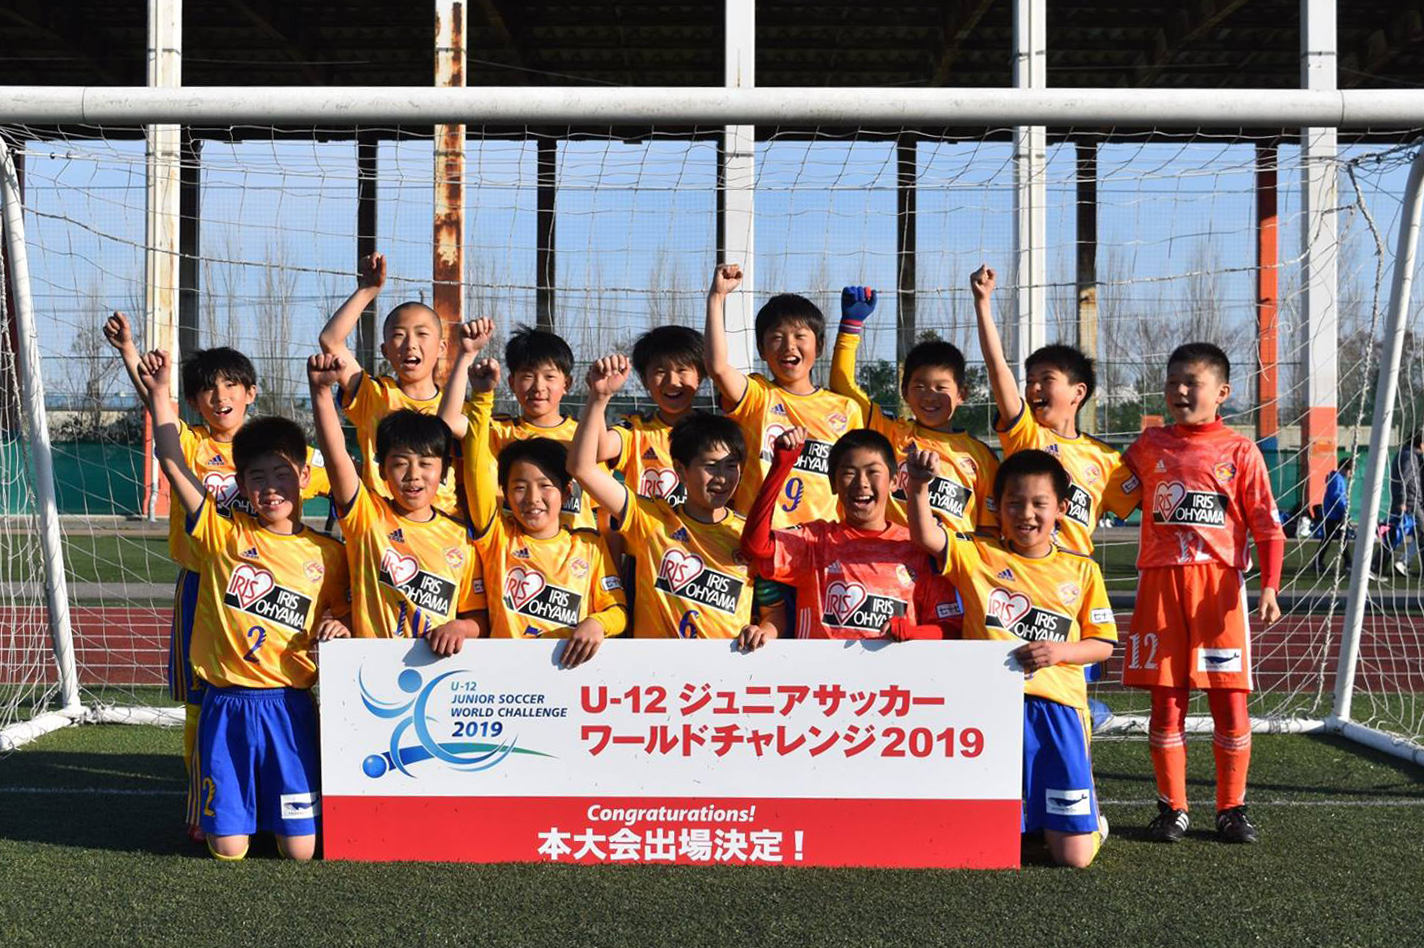 Jクラブ予選19 北日本 試合結果 U 12 ジュニアサッカー ワールドチャレンジ18